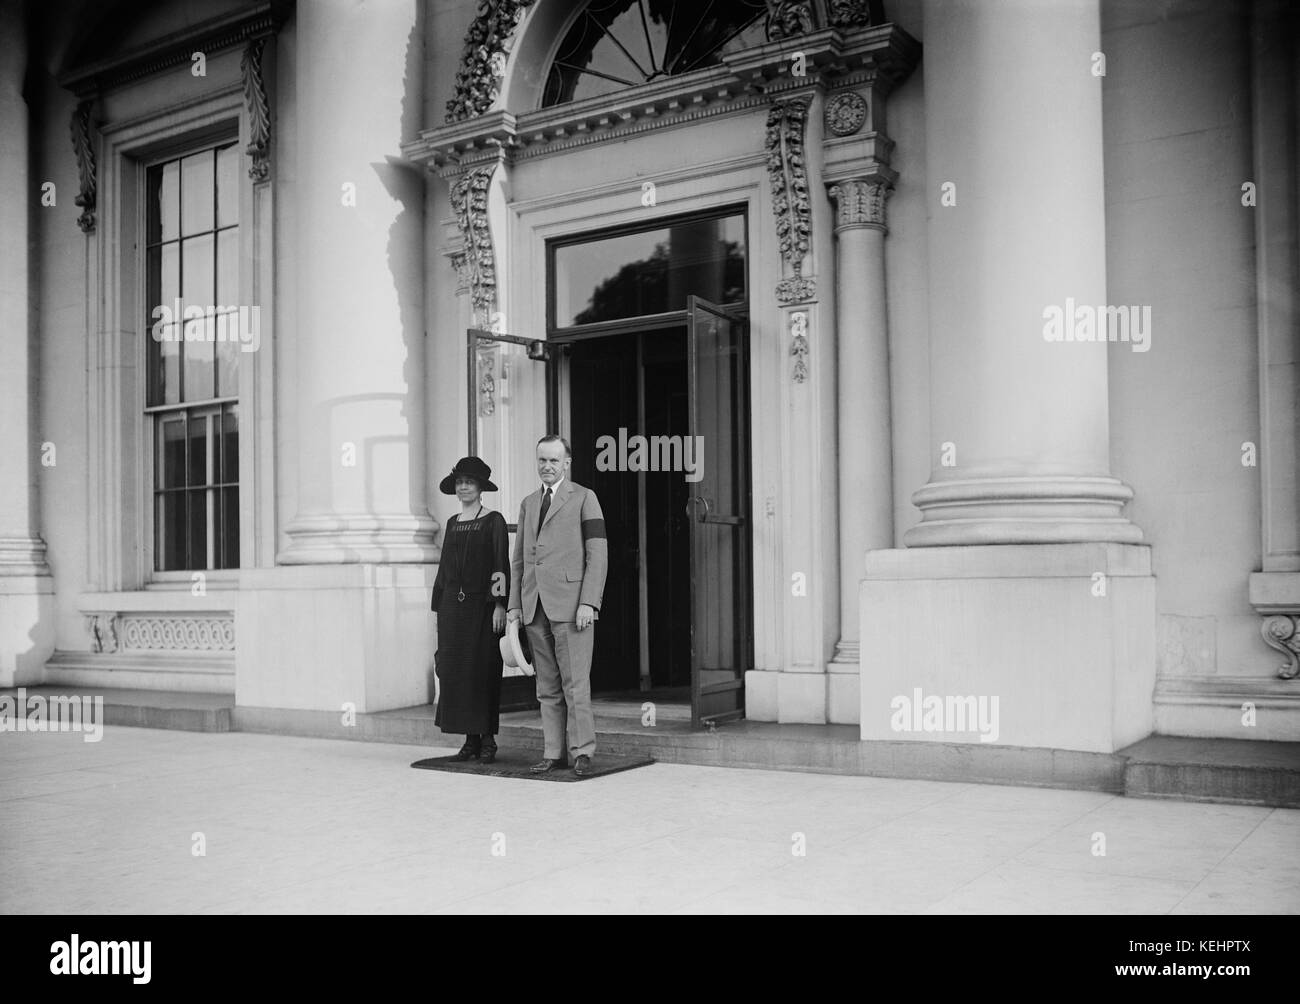 Il presidente USA Calvin Coolidge e first lady grazia coolidge,ritratto all'ingresso della casa bianca durante il periodo del lutto per il presidente Warren Harding,Washington dc, Stati Uniti d'America,Harris & ewing,Agosto 1923 Foto Stock